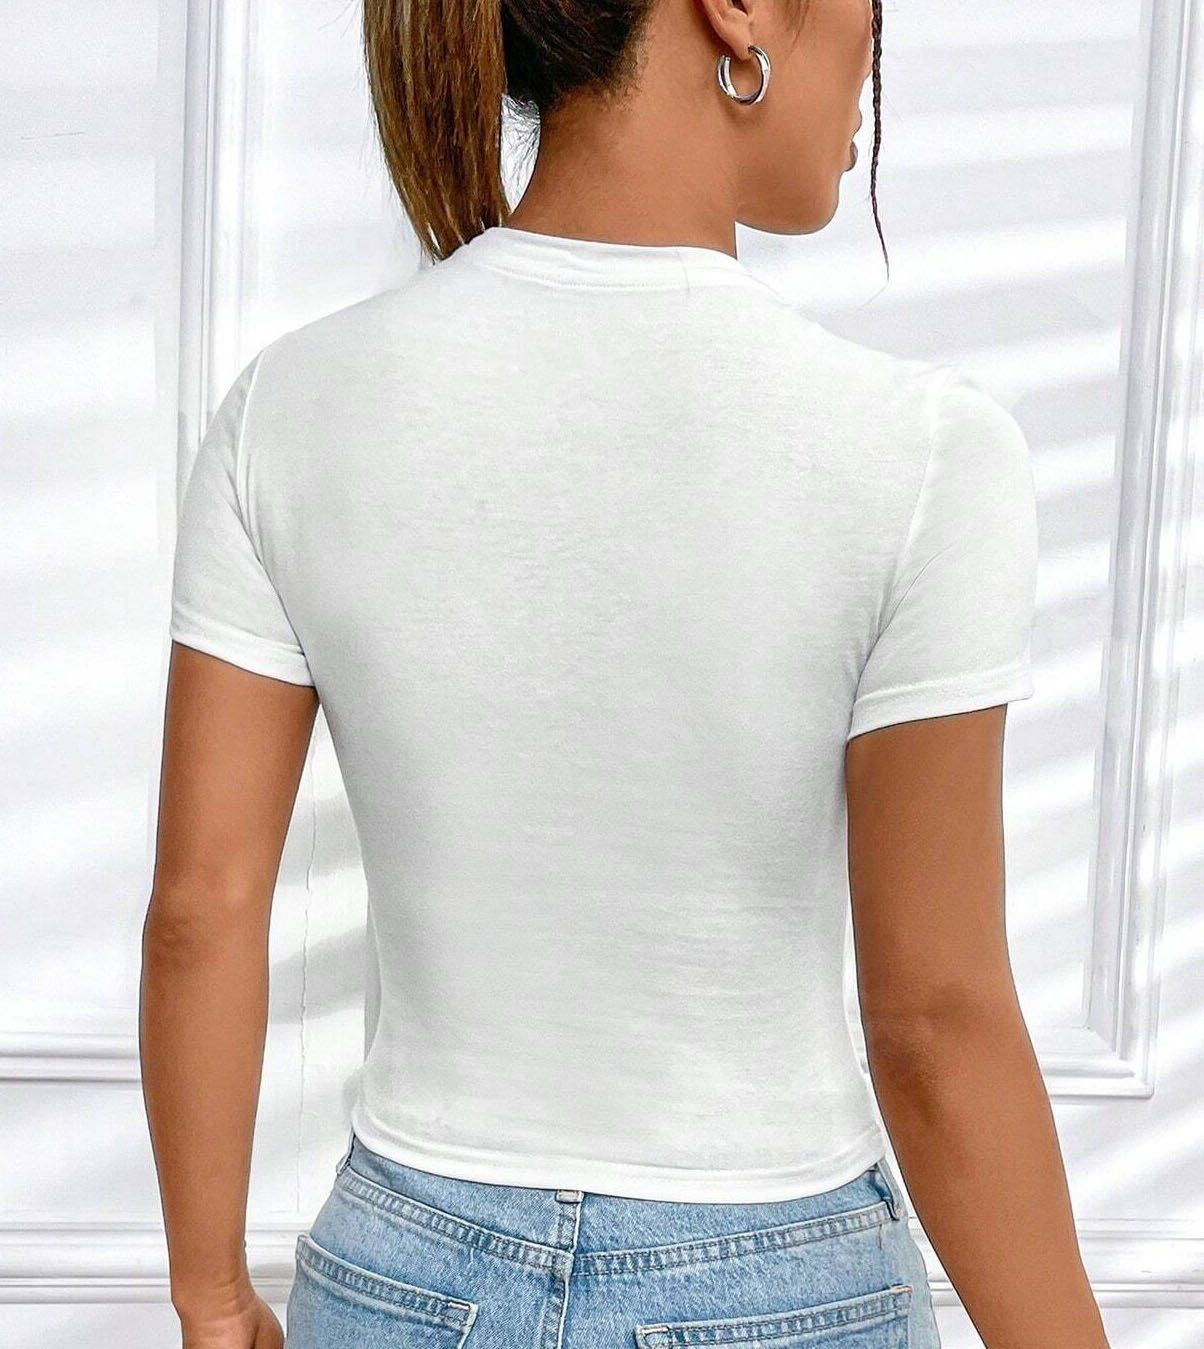 RMK Print-Shirt Damen T-Shirt Bär Originaldesign, Baumwolle, Brille Sommer Top aus Teddybär Unifarbe Rundhals mit süßer Weiß-Lila lizenziertem